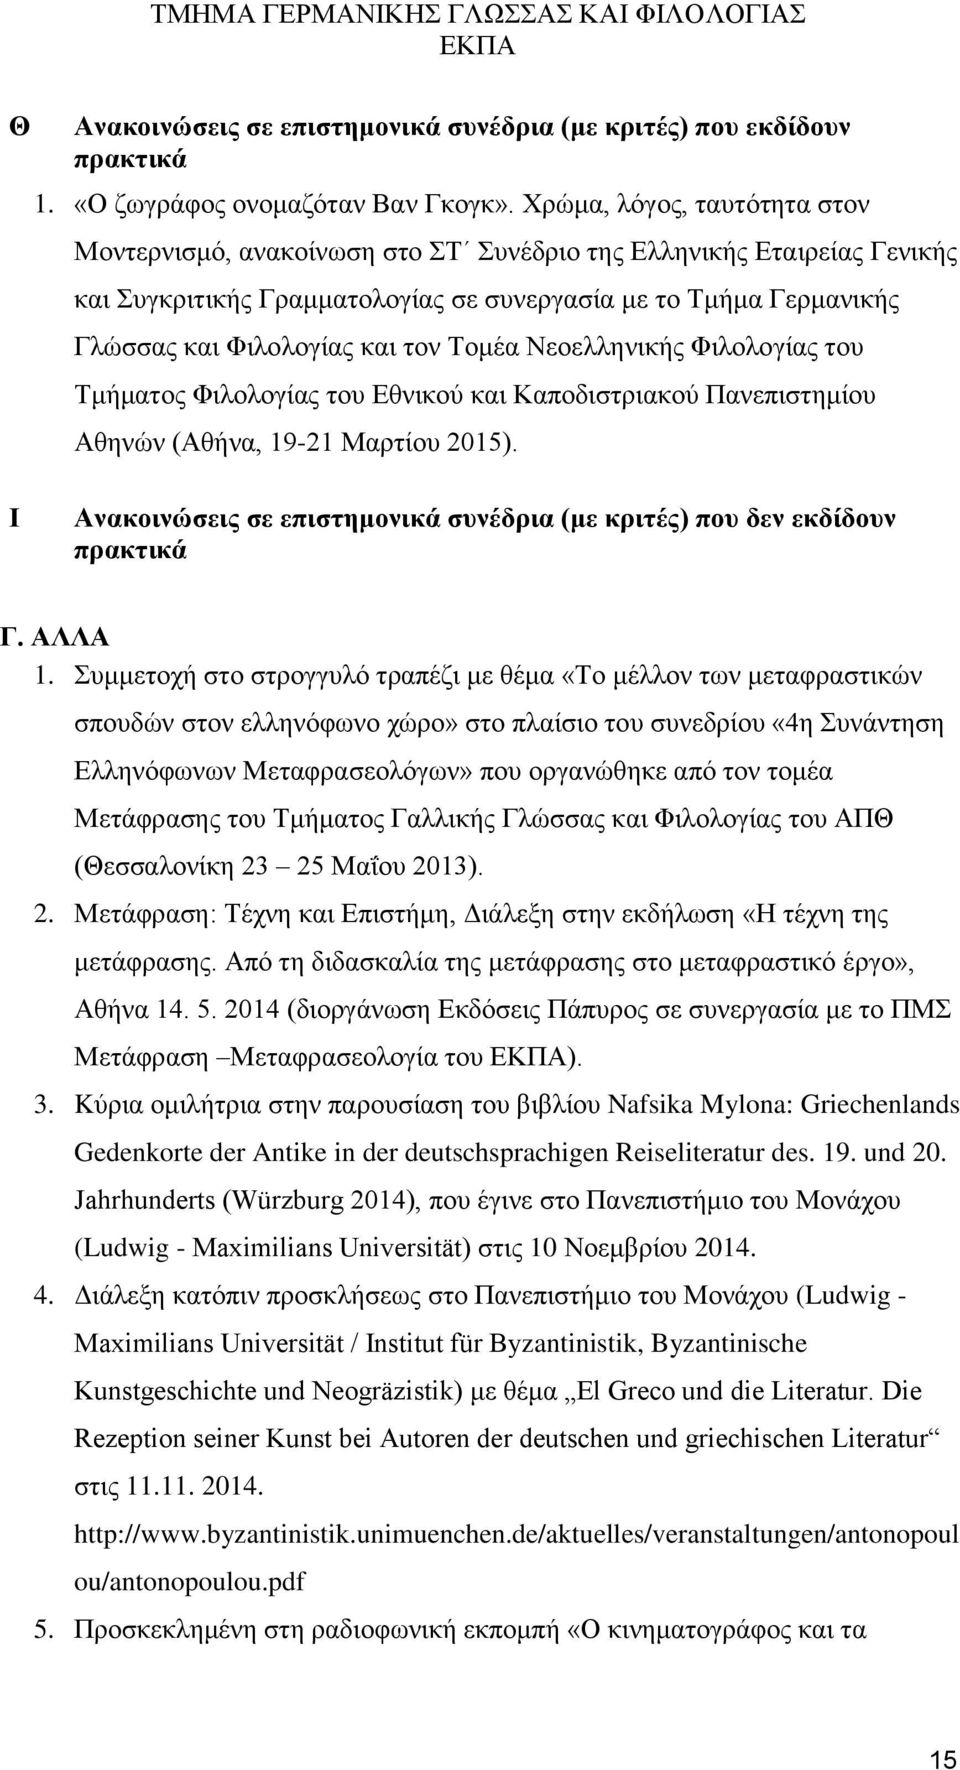 Τομέα Νεοελληνικής Φιλολογίας του Τμήματος Φιλολογίας του Εθνικού και Καποδιστριακού Πανεπιστημίου Αθηνών (Αθήνα, 19-21 Μαρτίου 2015).